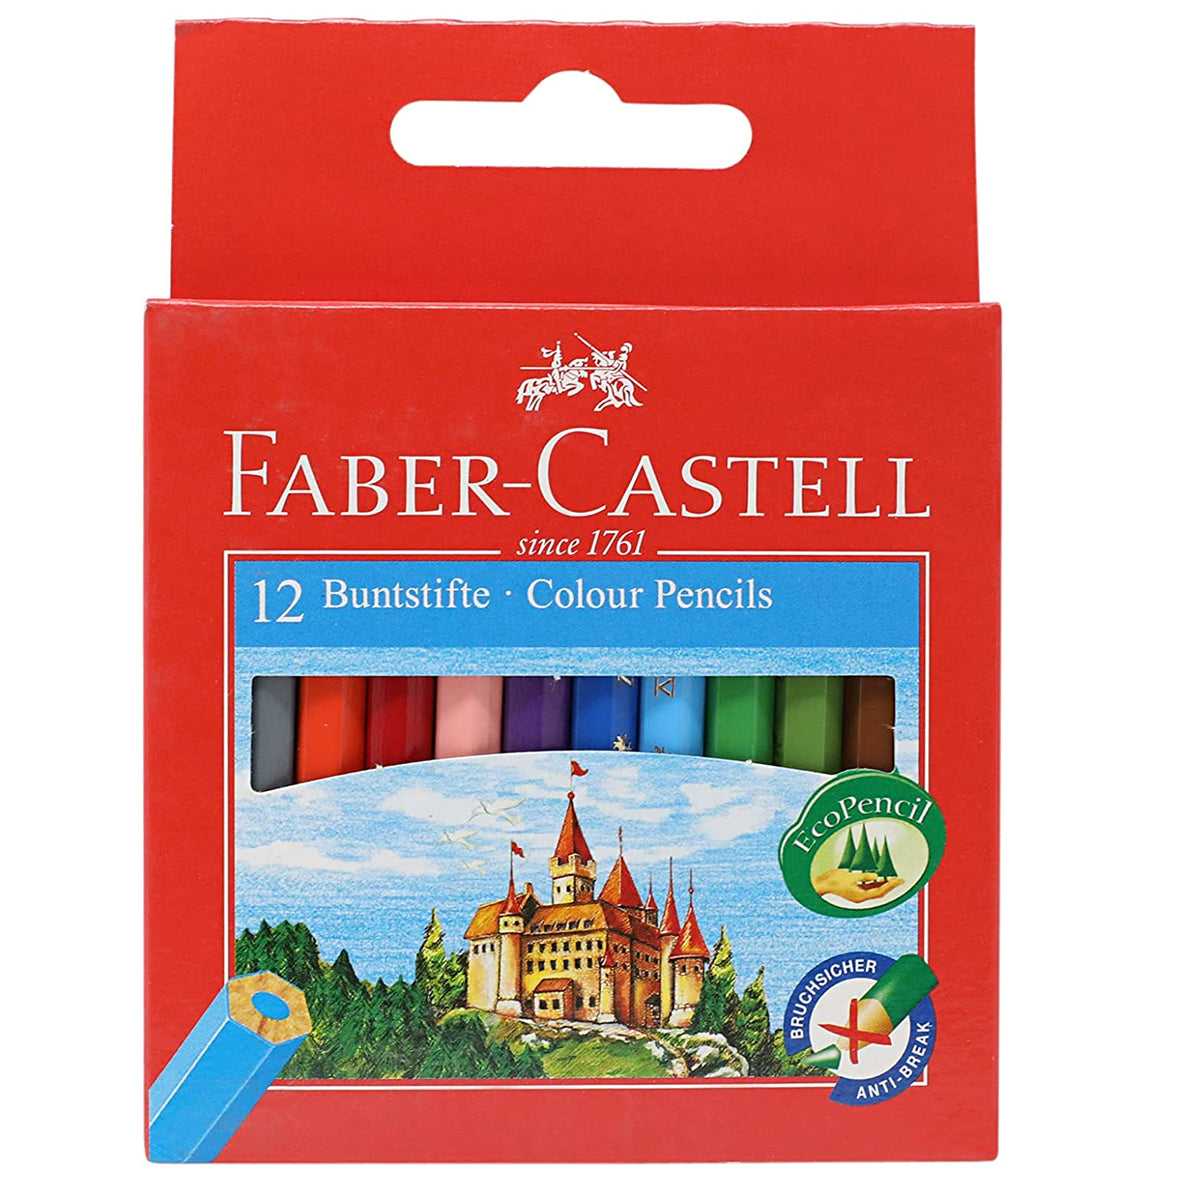 Faber Castell Wood Short Buntstifte Color Pencils 12 Color Pencils - Multi Color